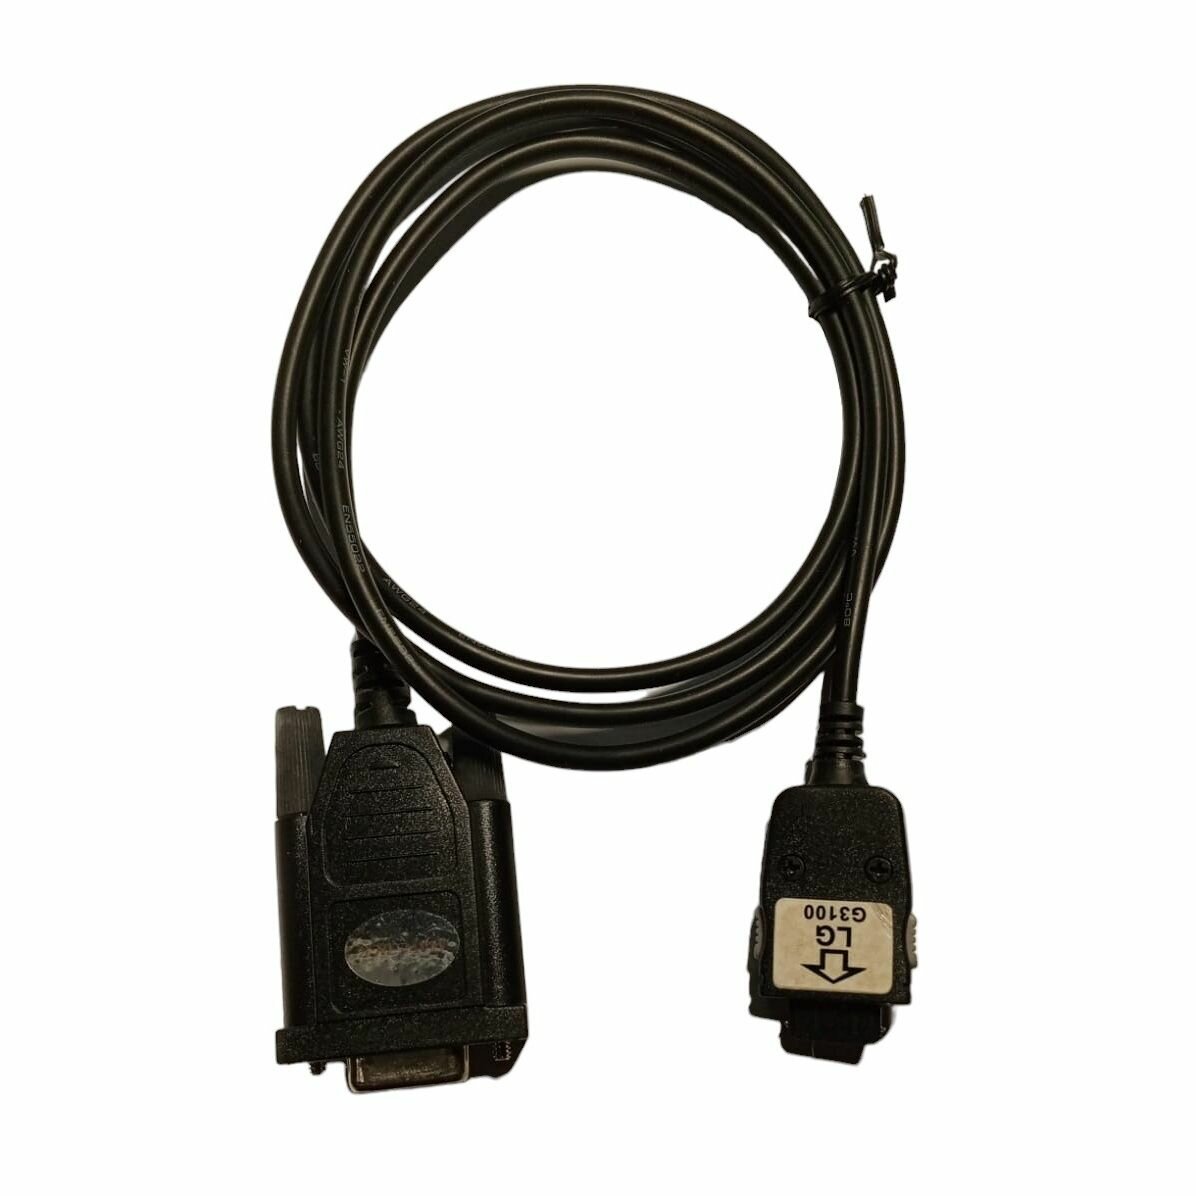 COM Data-кабель для LG B1200/B1300/G1500/W3000 и др. модели 18 pin